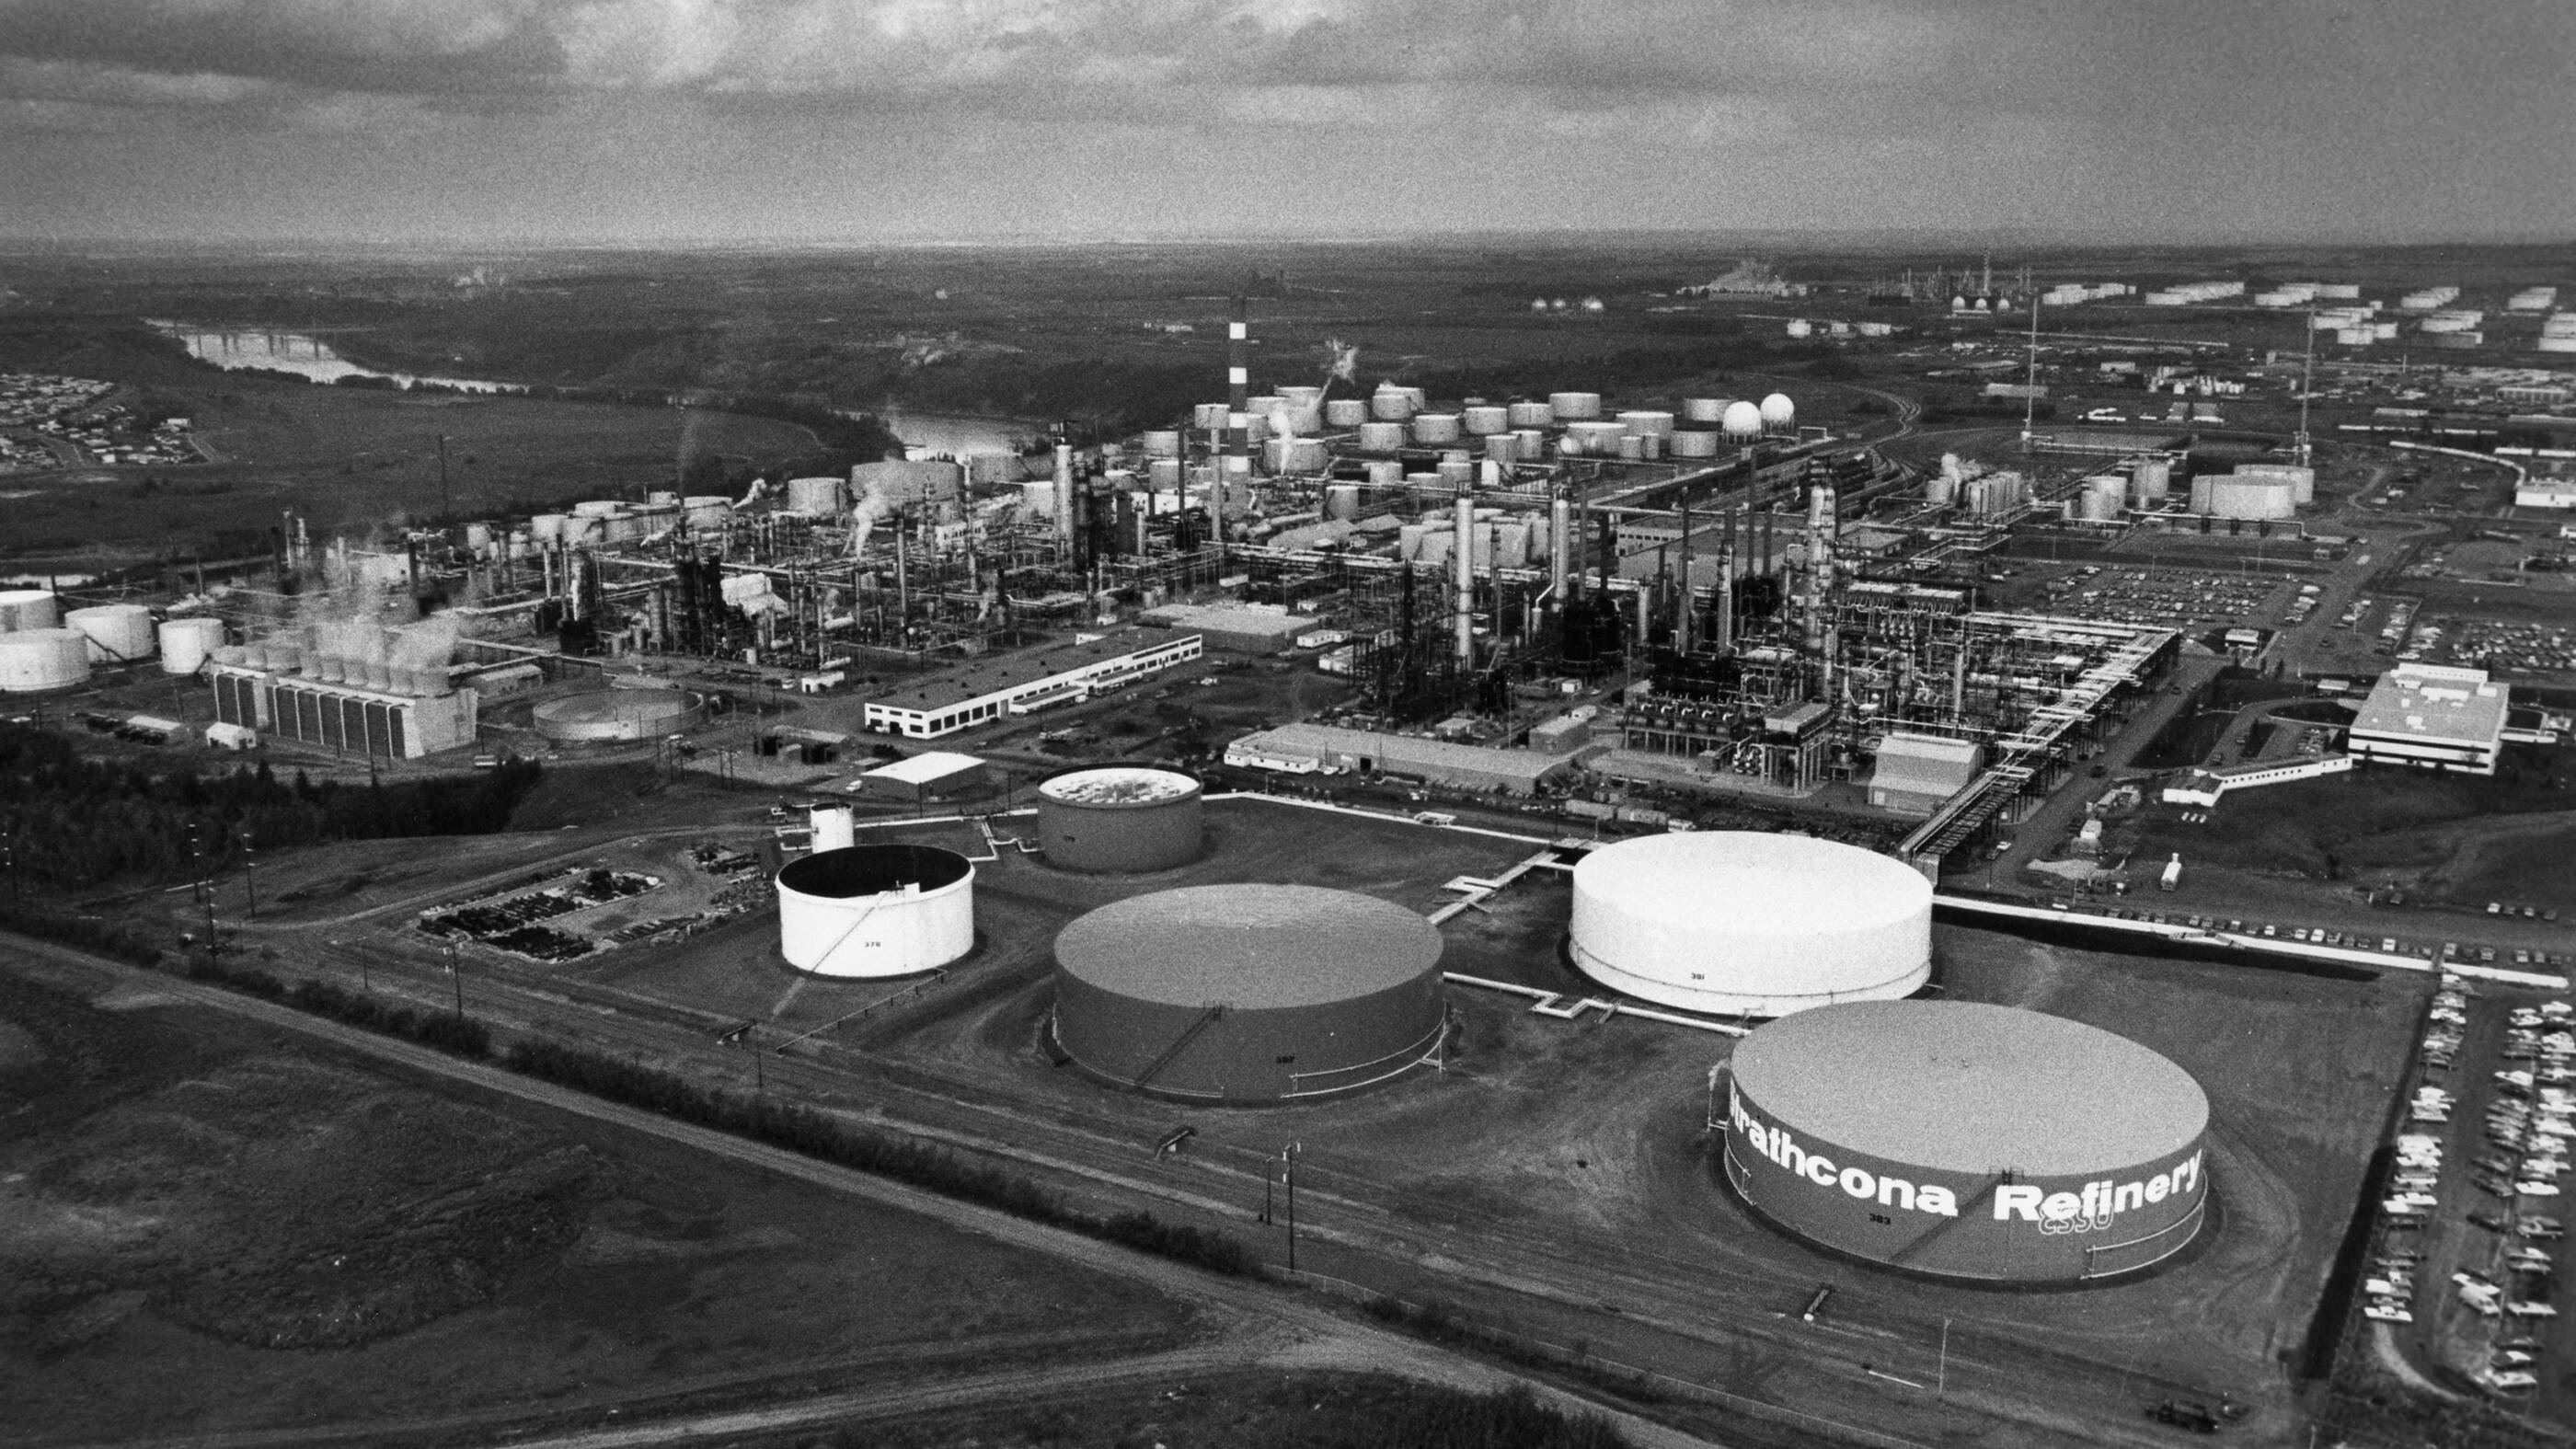 LImpriale construit la raffinerie de Strathcona afin de remplacer les anciennes raffineries dEdmonton, de Regina, de Winnipeg et de Calgary.